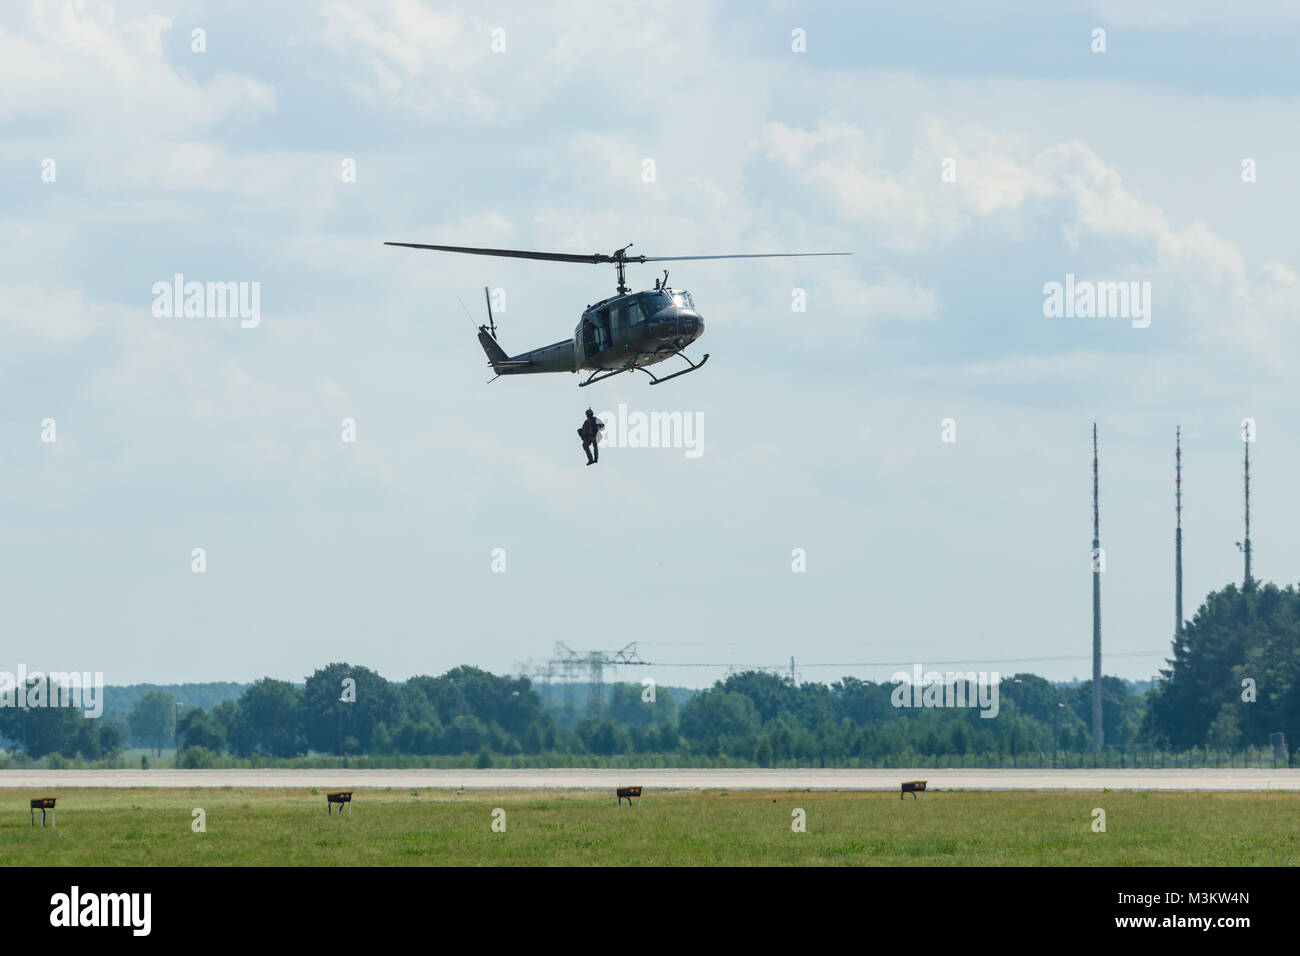 BERLIN, DEUTSCHLAND - Juni 02, 2016: Demonstration der militärischen Hubschrauber Bell UH-1 Iroquois mit der Landung. Deutsche Armee. Ausstellung die ILA Berlin Air Show 2016 Stockfoto